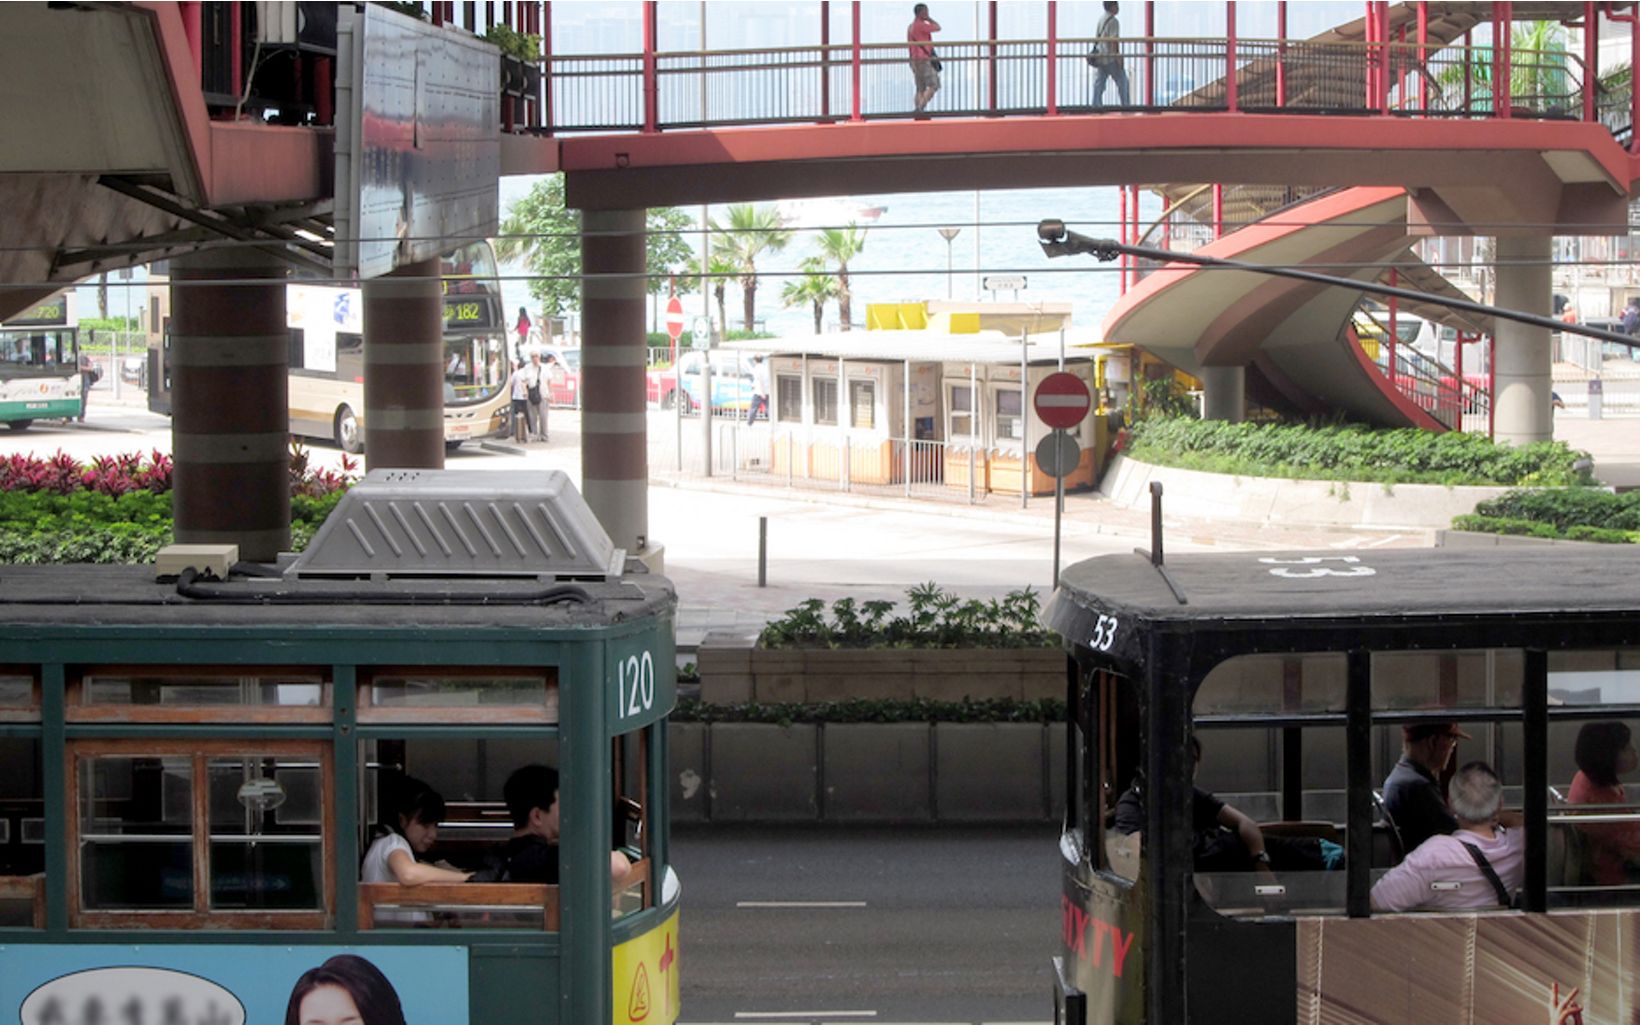 Hong Kong public trams